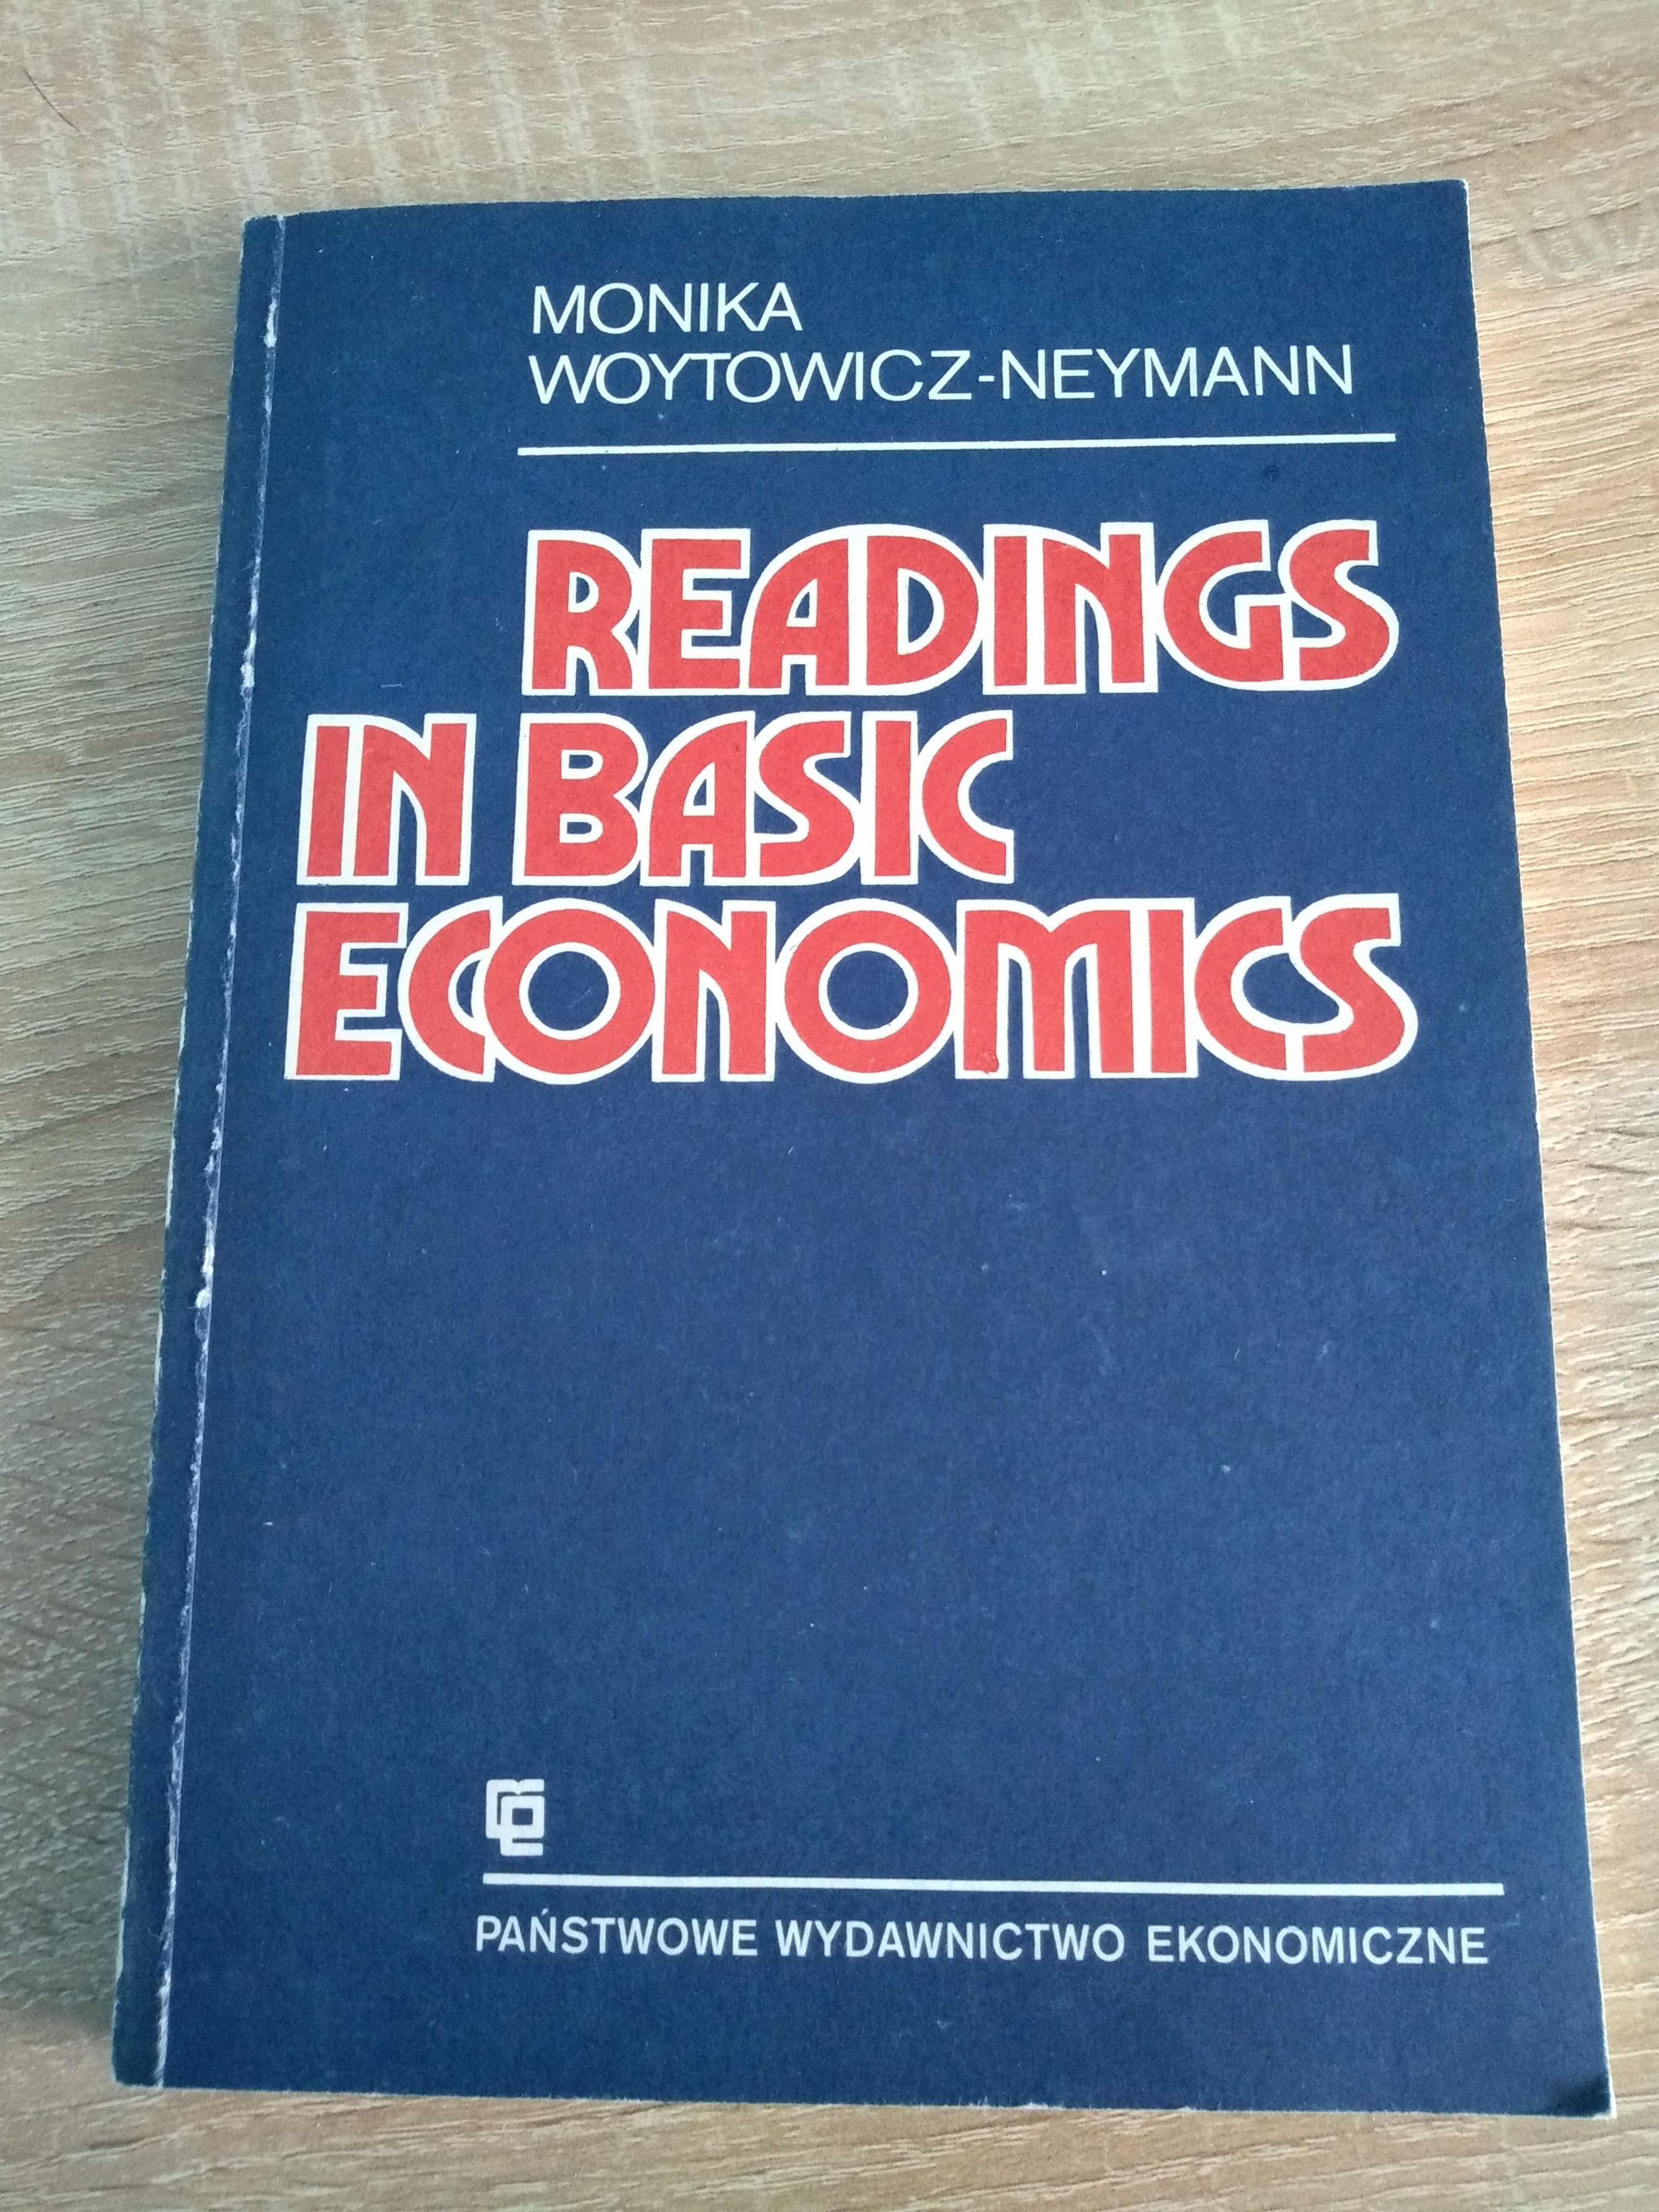 Książka Readings in Basic Economics, Monika Woytowicz-Neymann